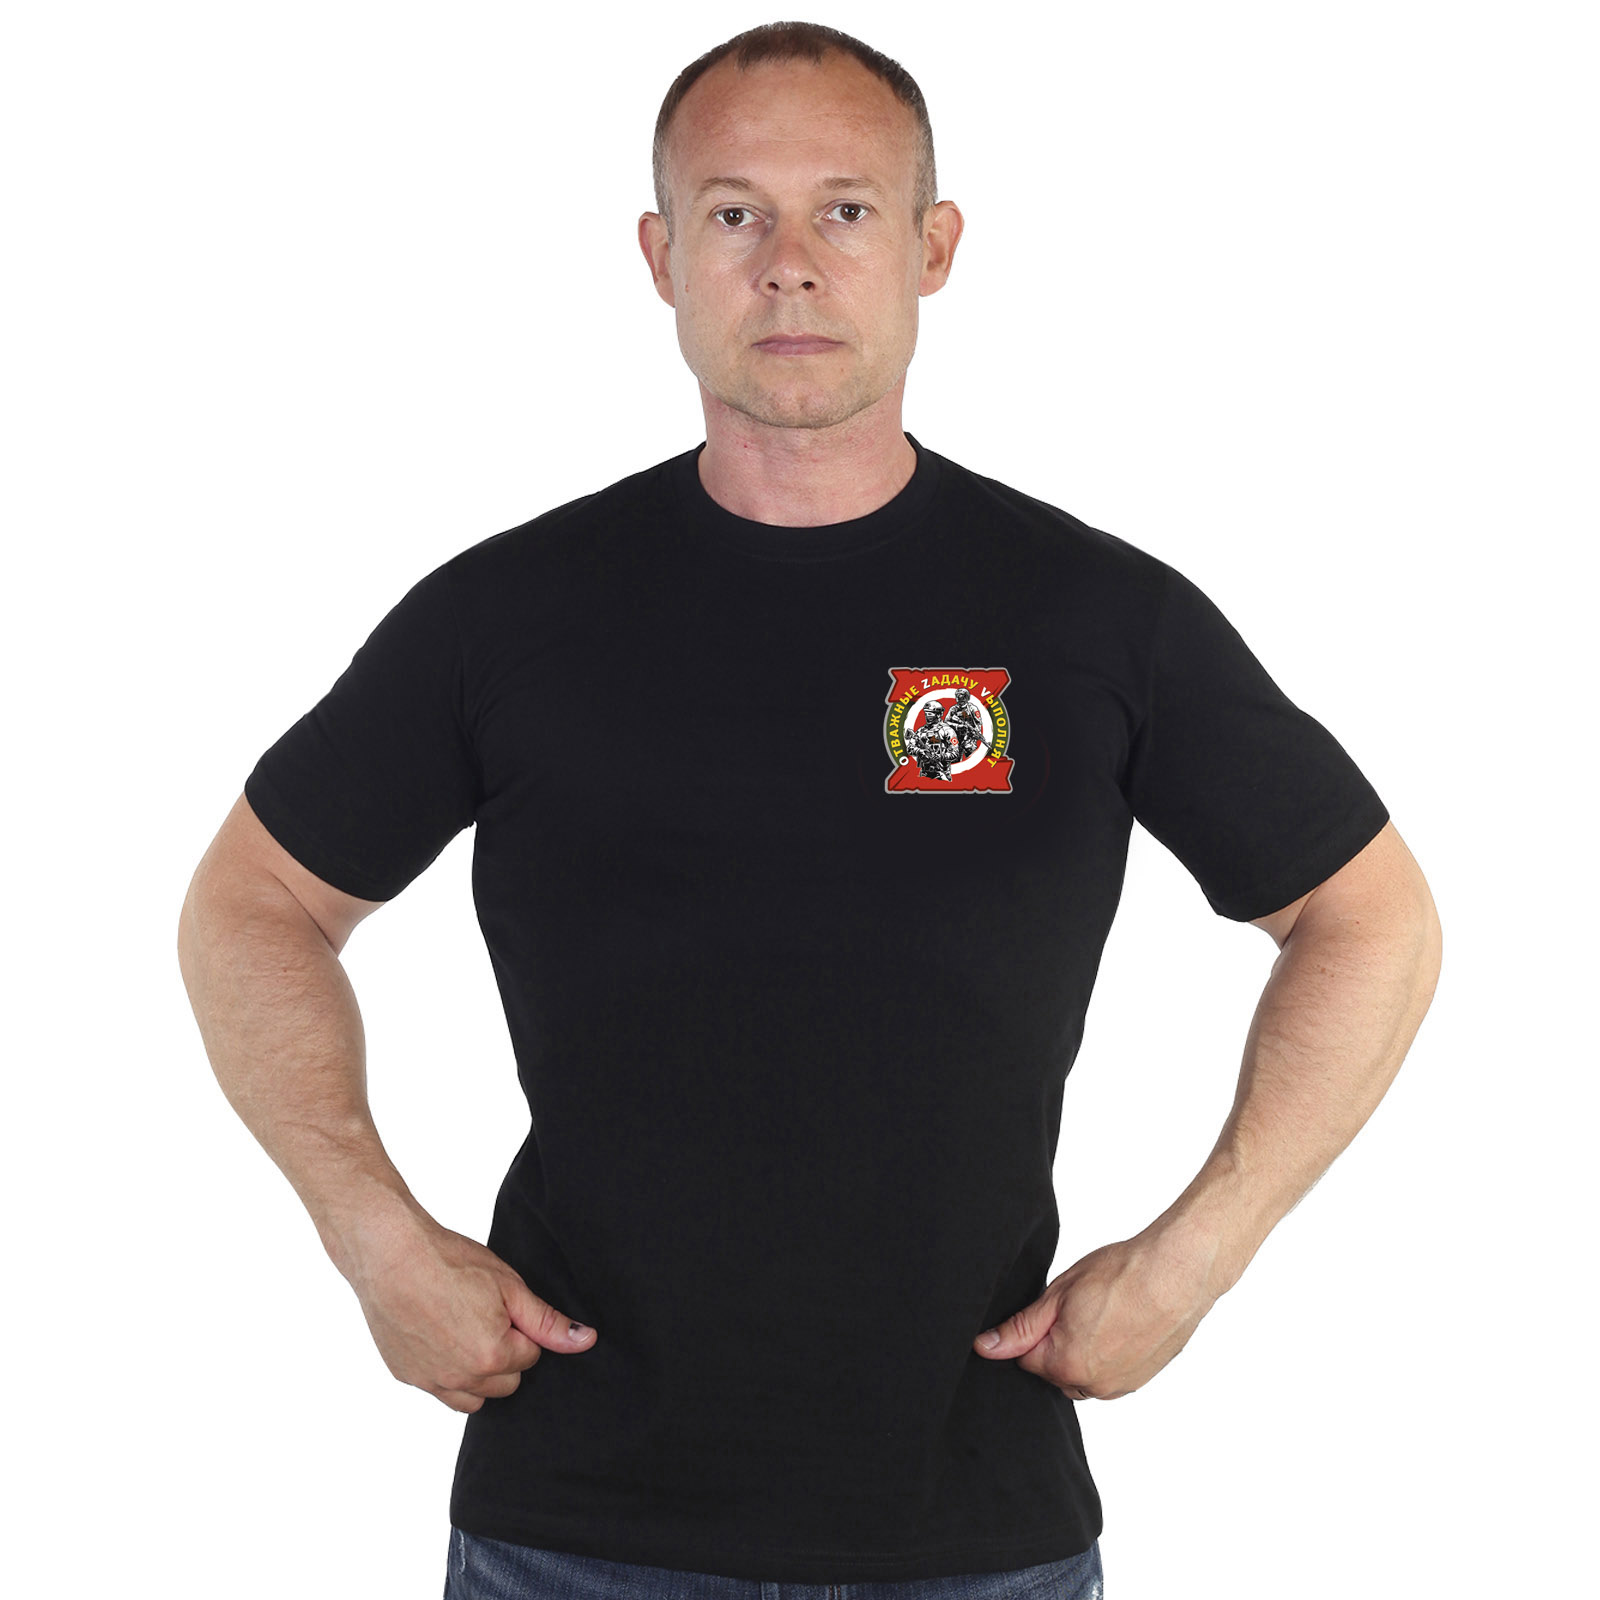 Чёрная футболка с термотрансфером "Отважные Zадачу Vыполнят"